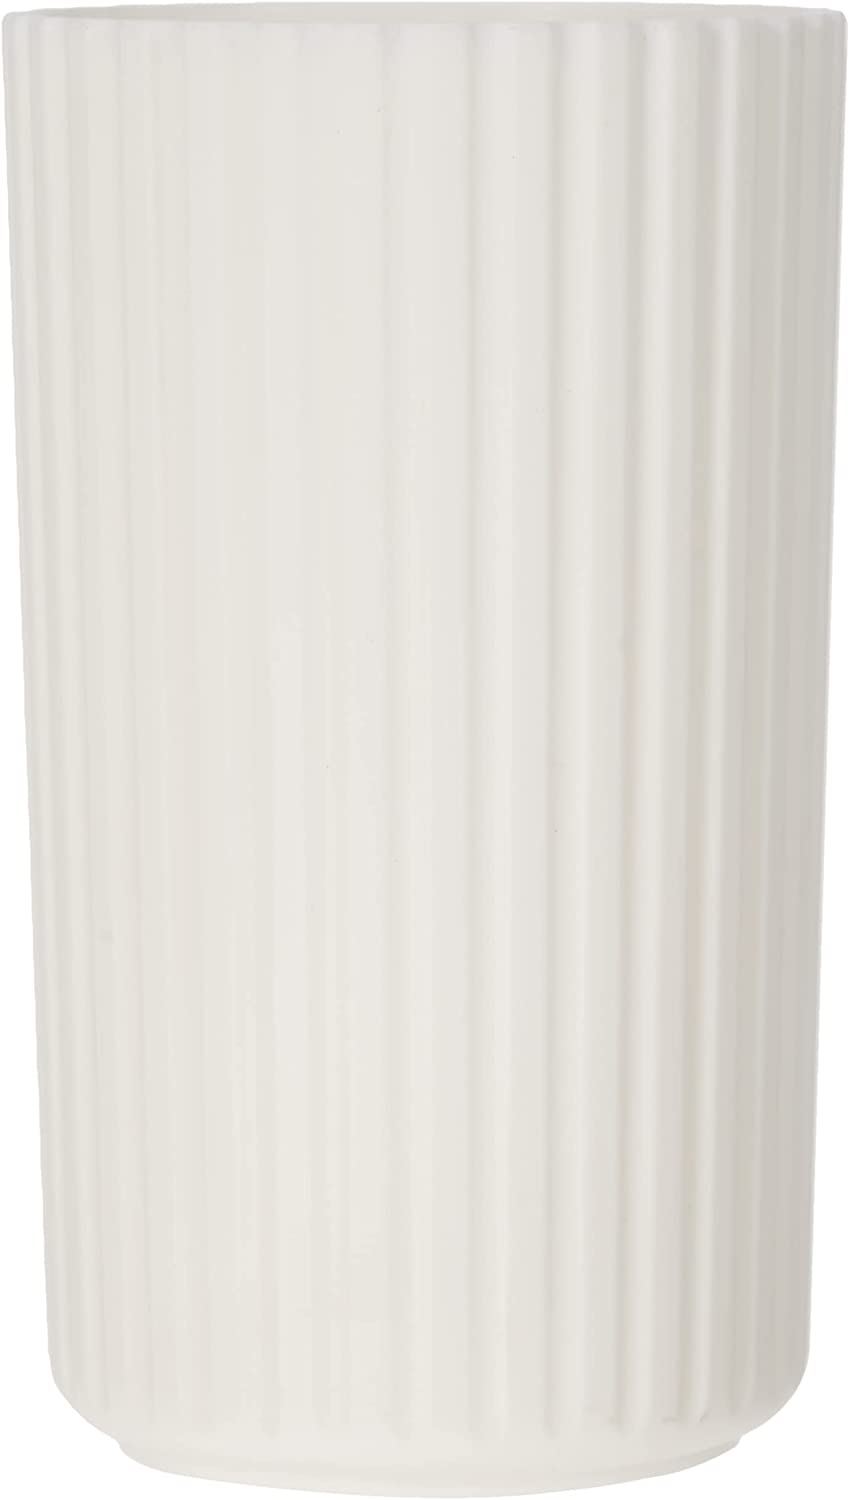 Zahnputzbecher Minas Weiß - Zahnbürstenhalter für Zahnbürste und Zahnpasta, Polypropylen, 7 x 12 x 7 cm, Weiß